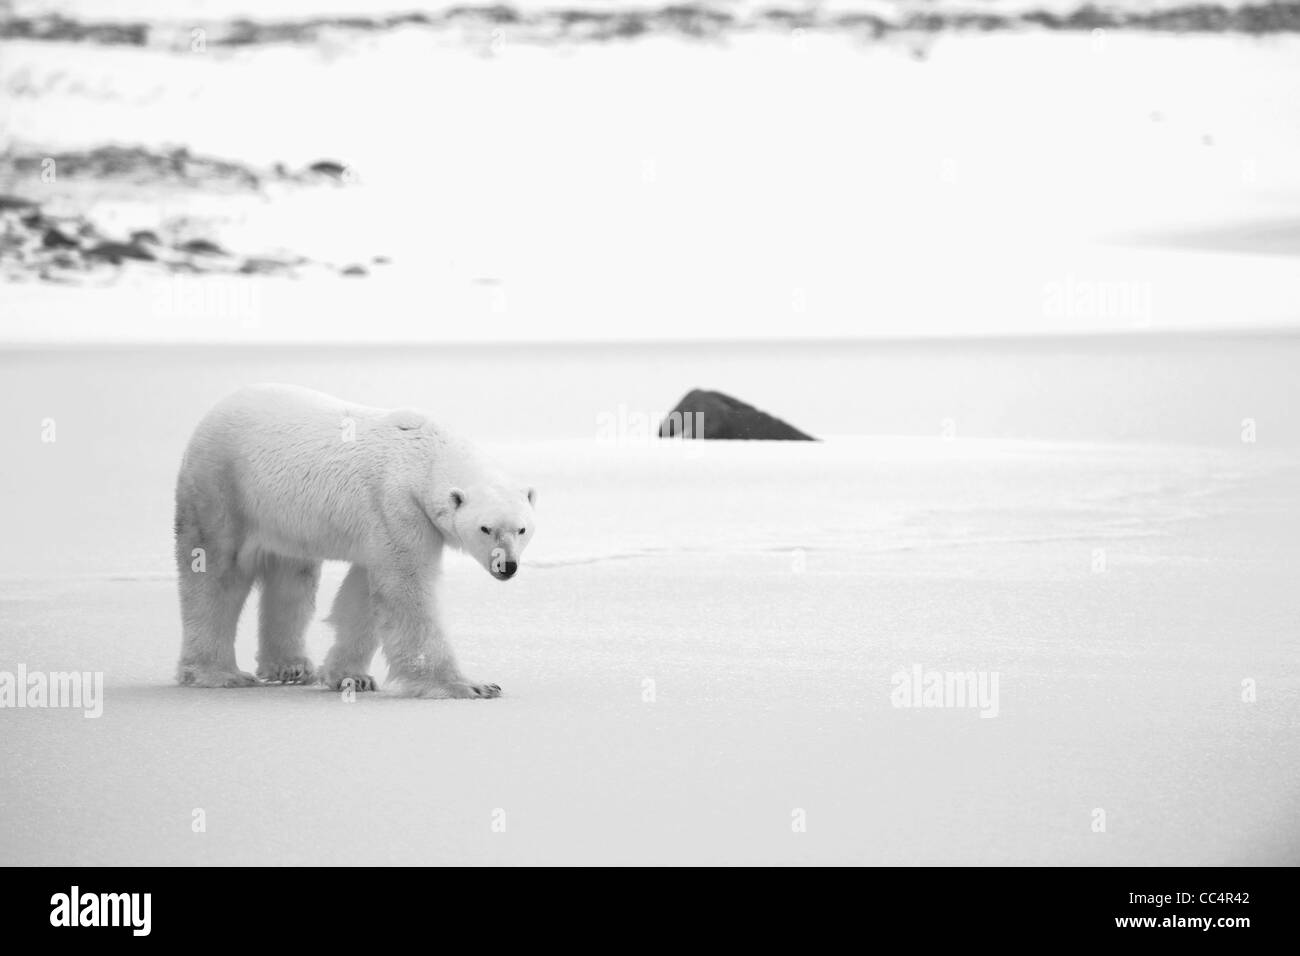 Polar Bear on the snow. Black and white photo. Stock Photo